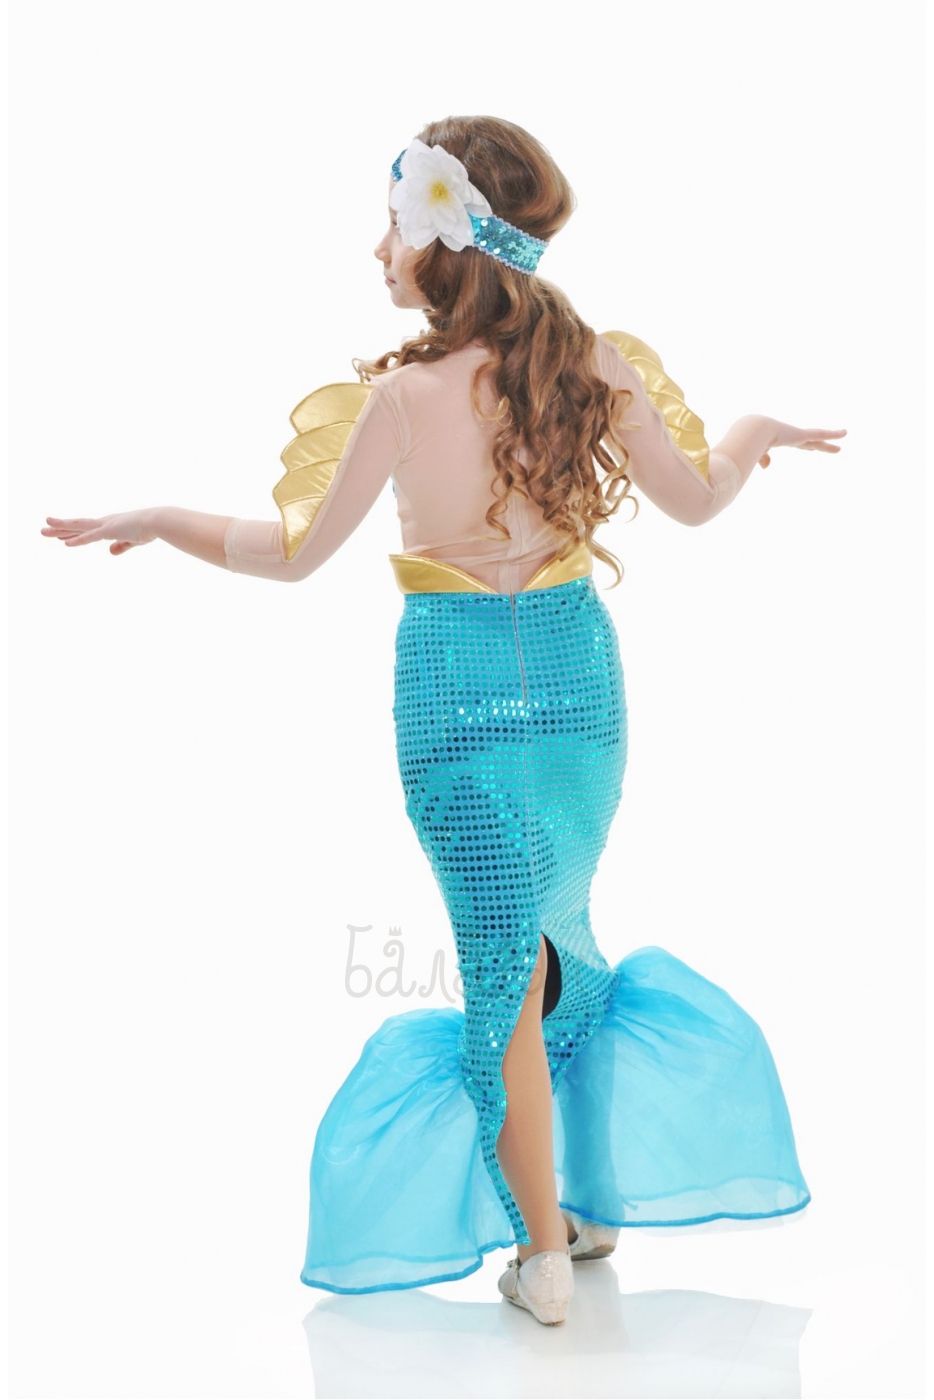 Mermaid Disney style costume for little girl 